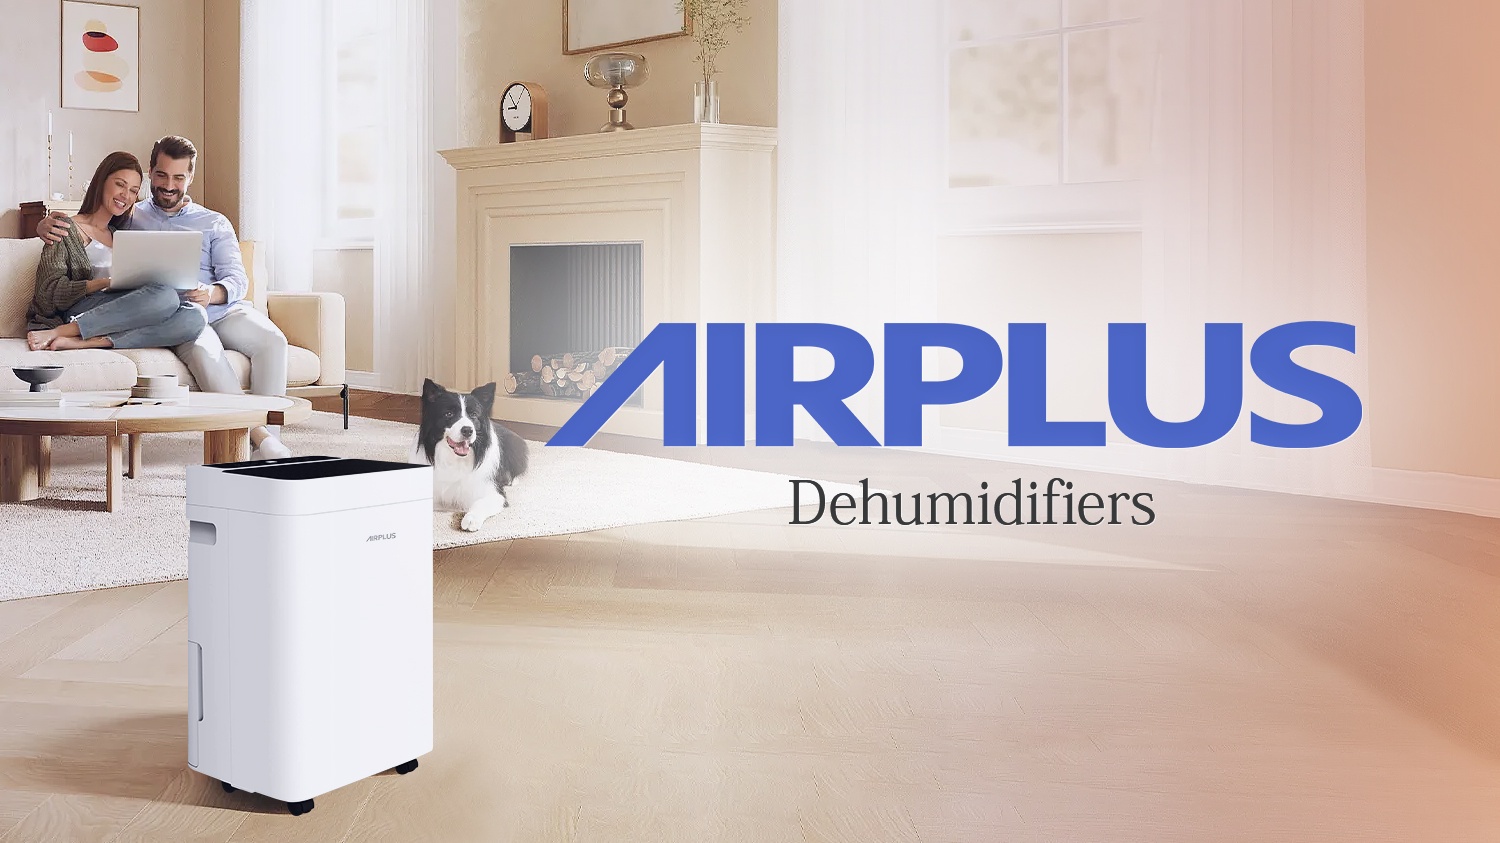 AIRPLUS Dehumidifiers, 30 Pint Dehumidifiers with Drain Hose, 1,500 Sq. ft.  Dehumidifier for Home, Rebuilt Dehumidifiers for Basement, AP1907, White 